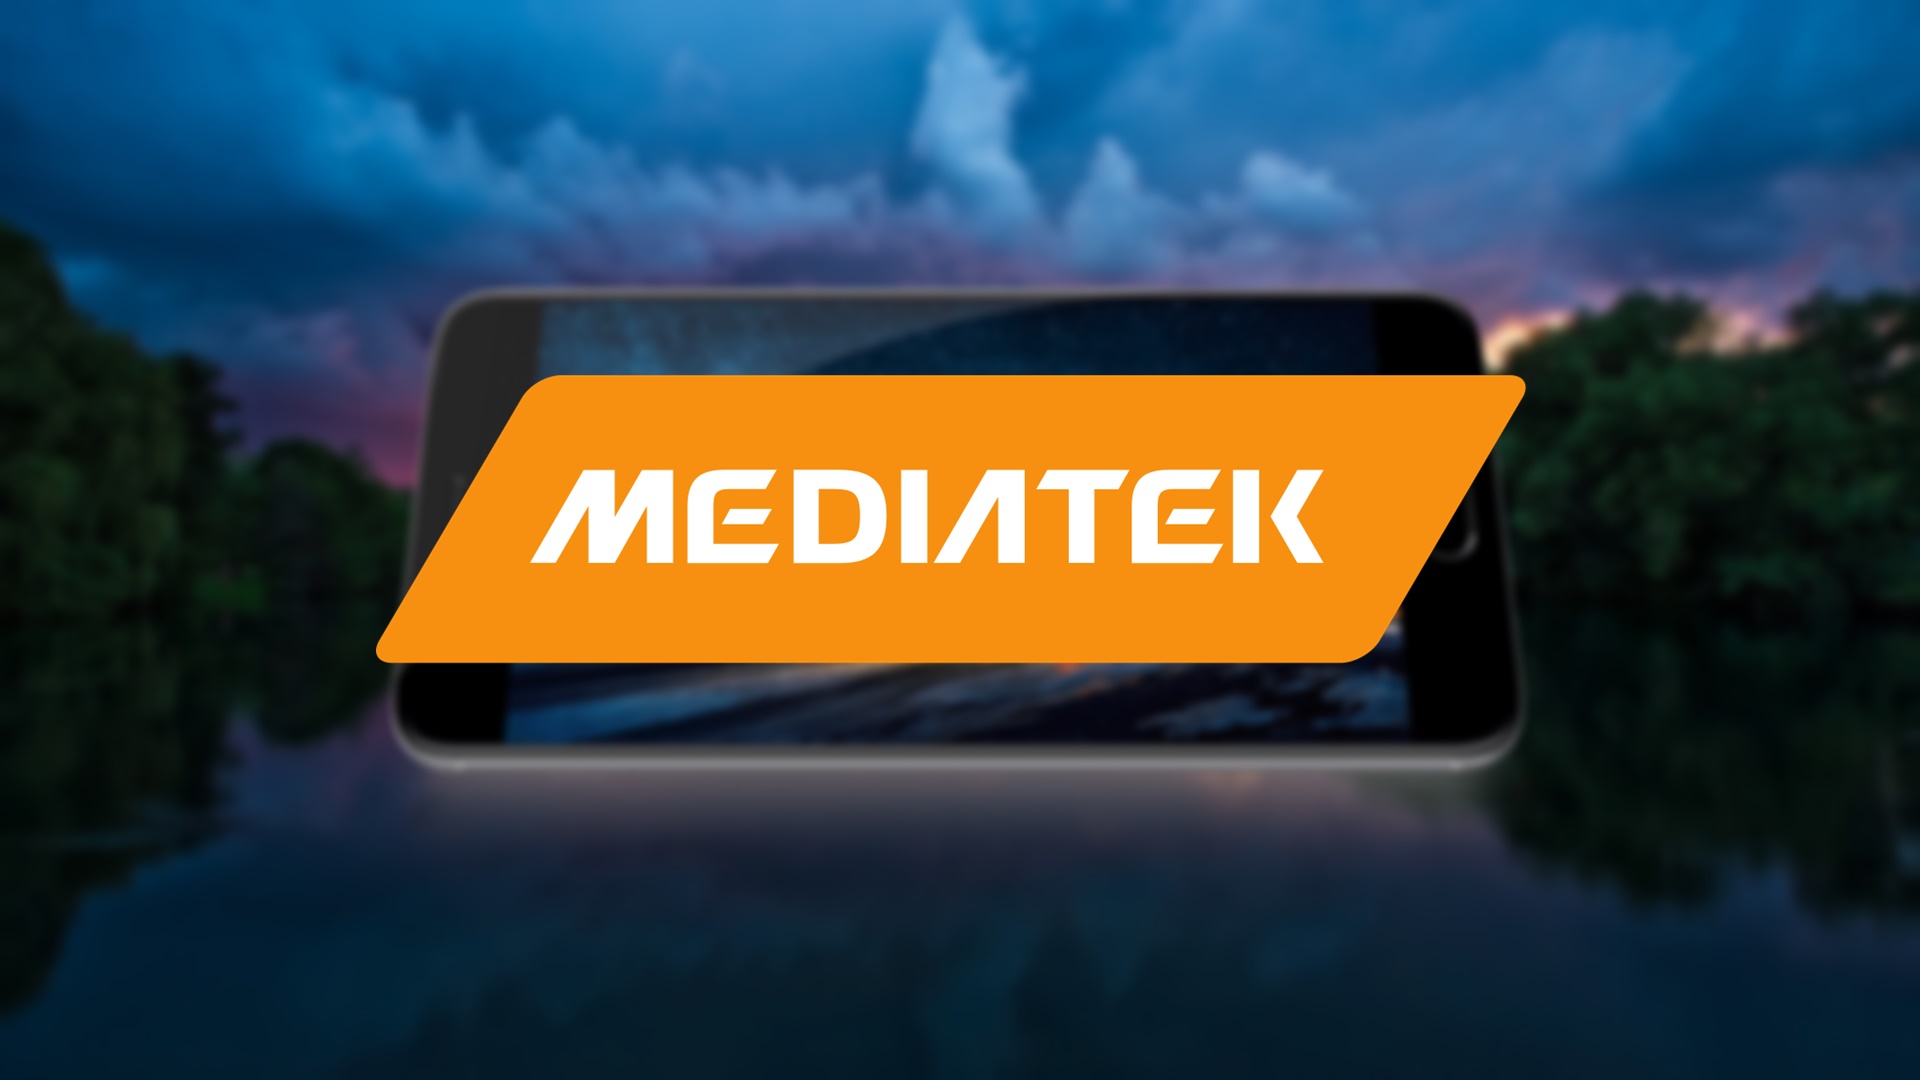 MediaTek talked about 